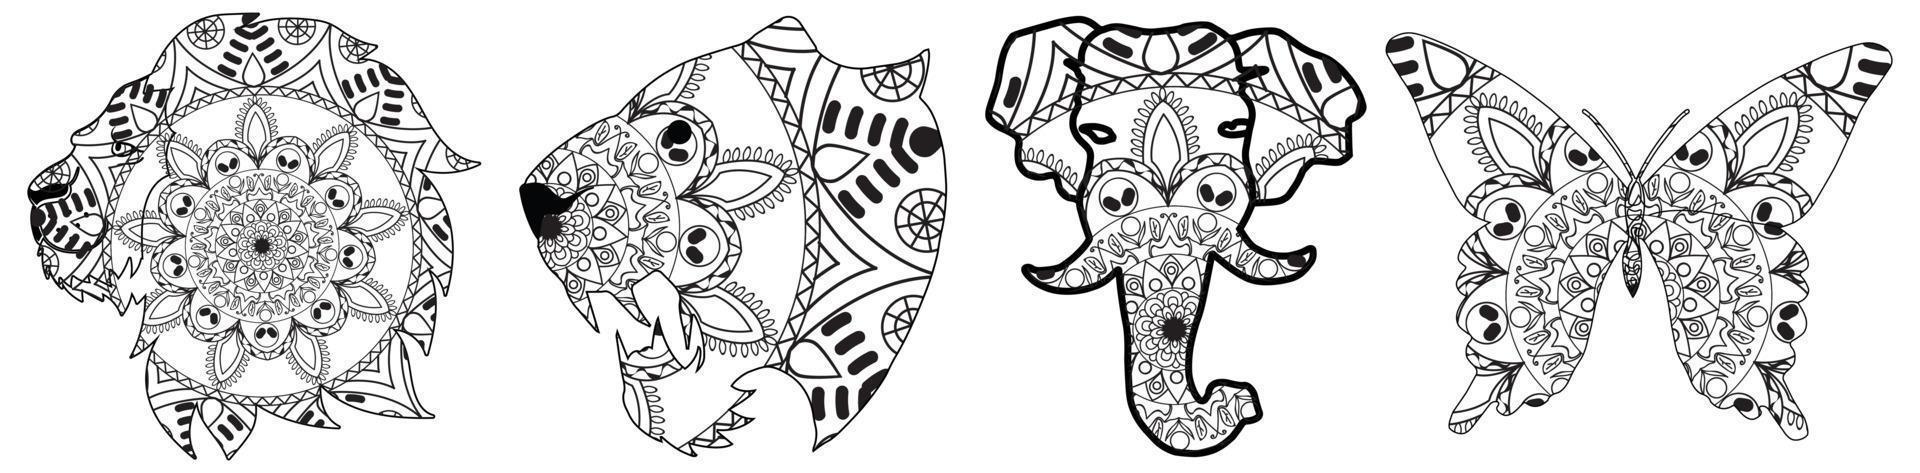 conjunto decorativo com animais, vetor de mandala. grande conjunto com elefante decorativo, leão, tigre, coelho, borboleta, azul, guindaste e mandala. arte vetorial desenhada à mão. animal, luxo, real, mandal indiano.